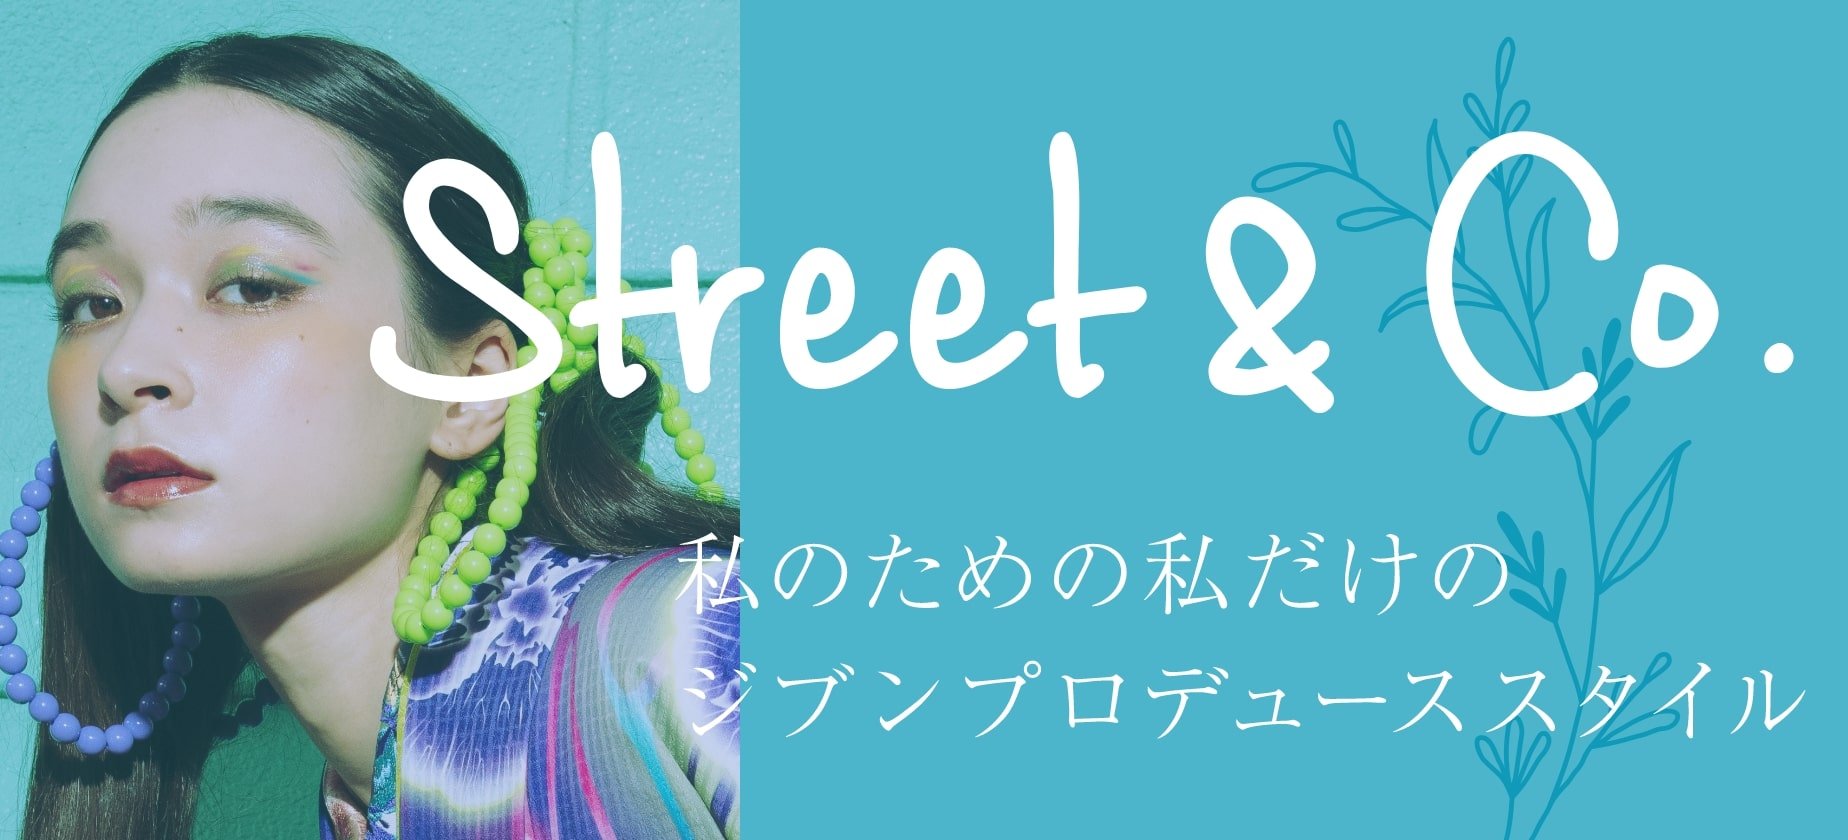 Street&Co.